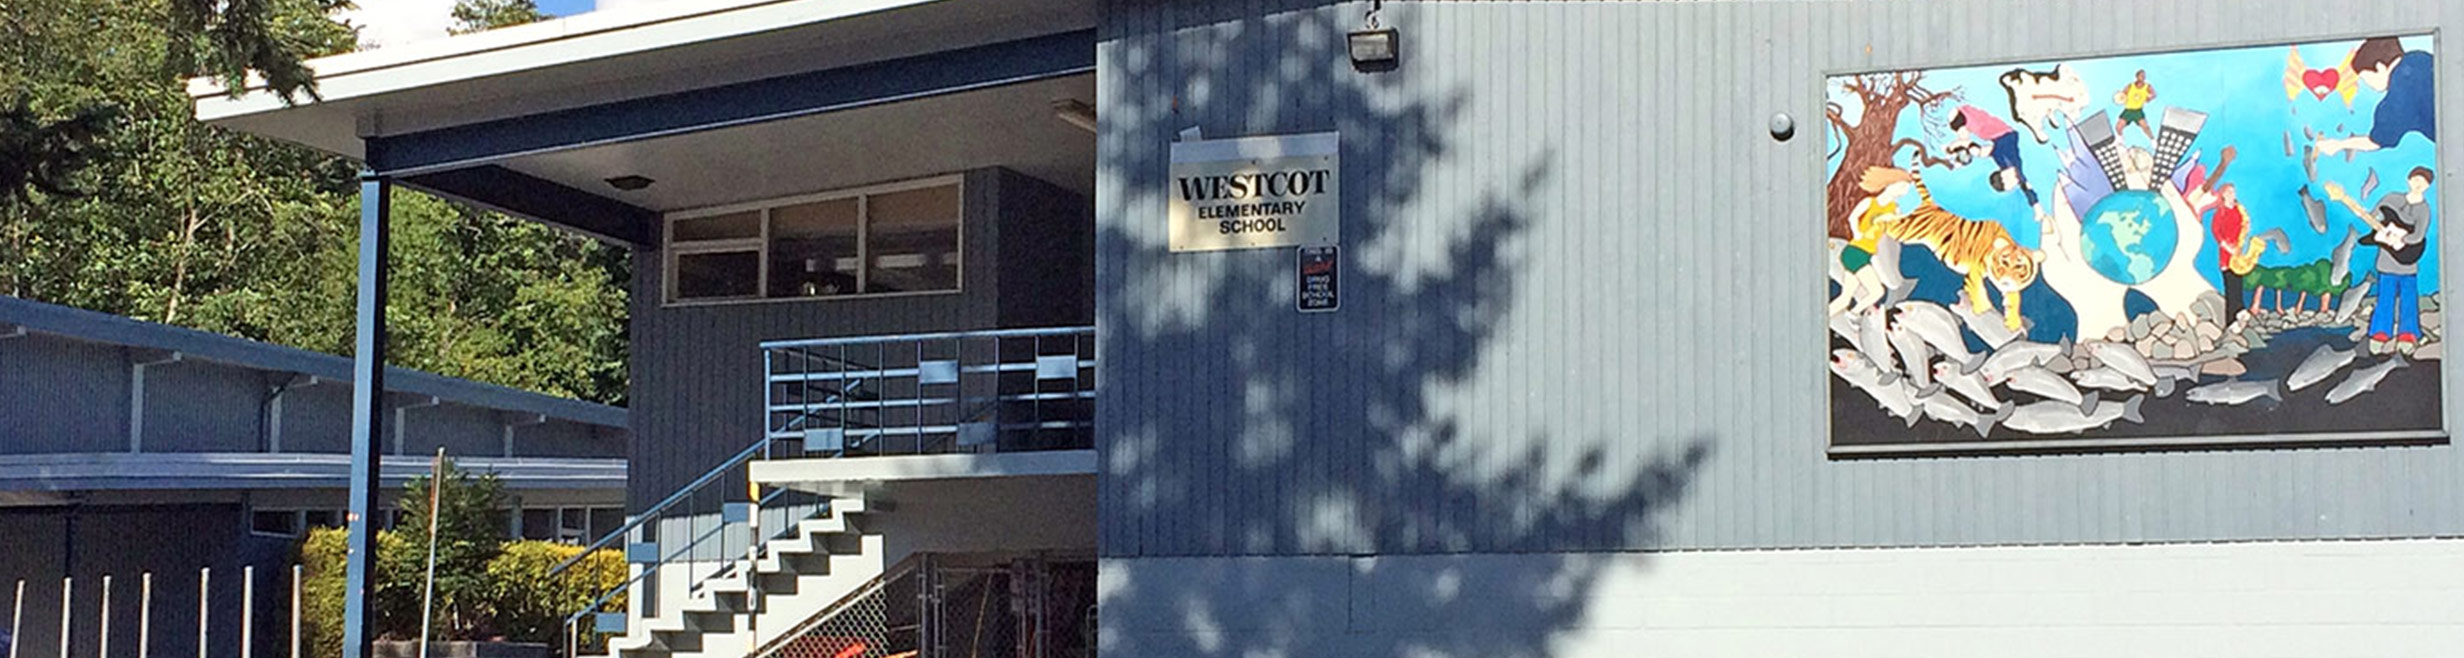 Westcot-school-banner-01